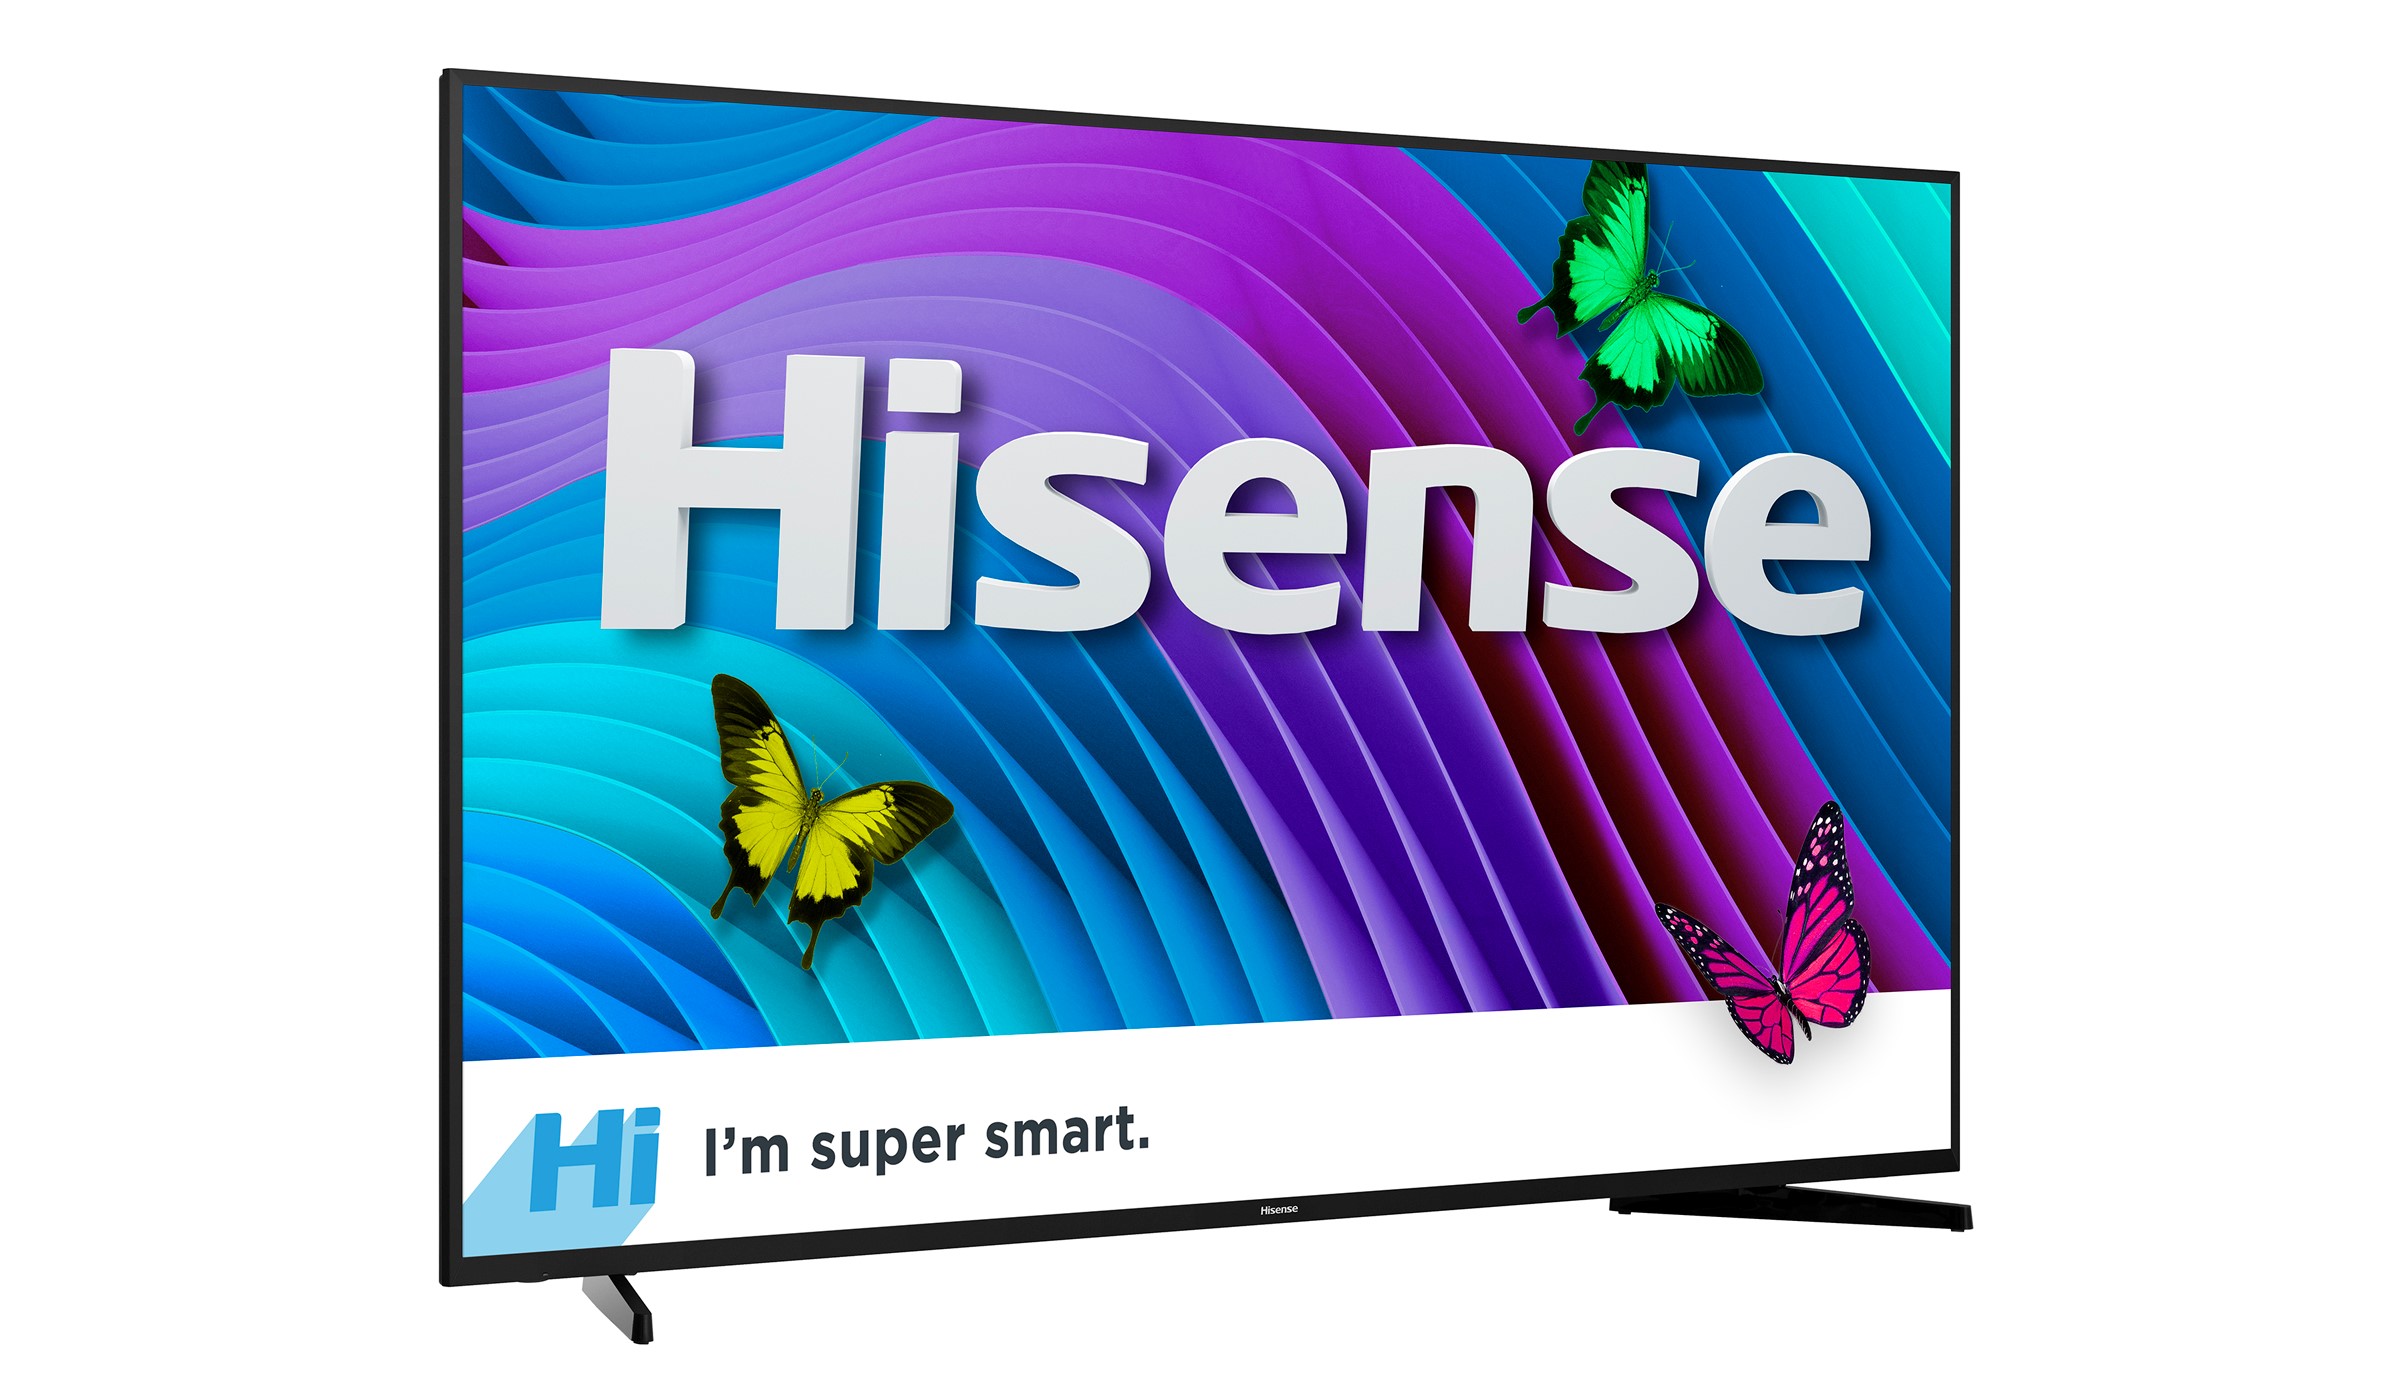 Hisense 65H6D 65" Class 4K 2160p Smart LED TV - image 5 of 8